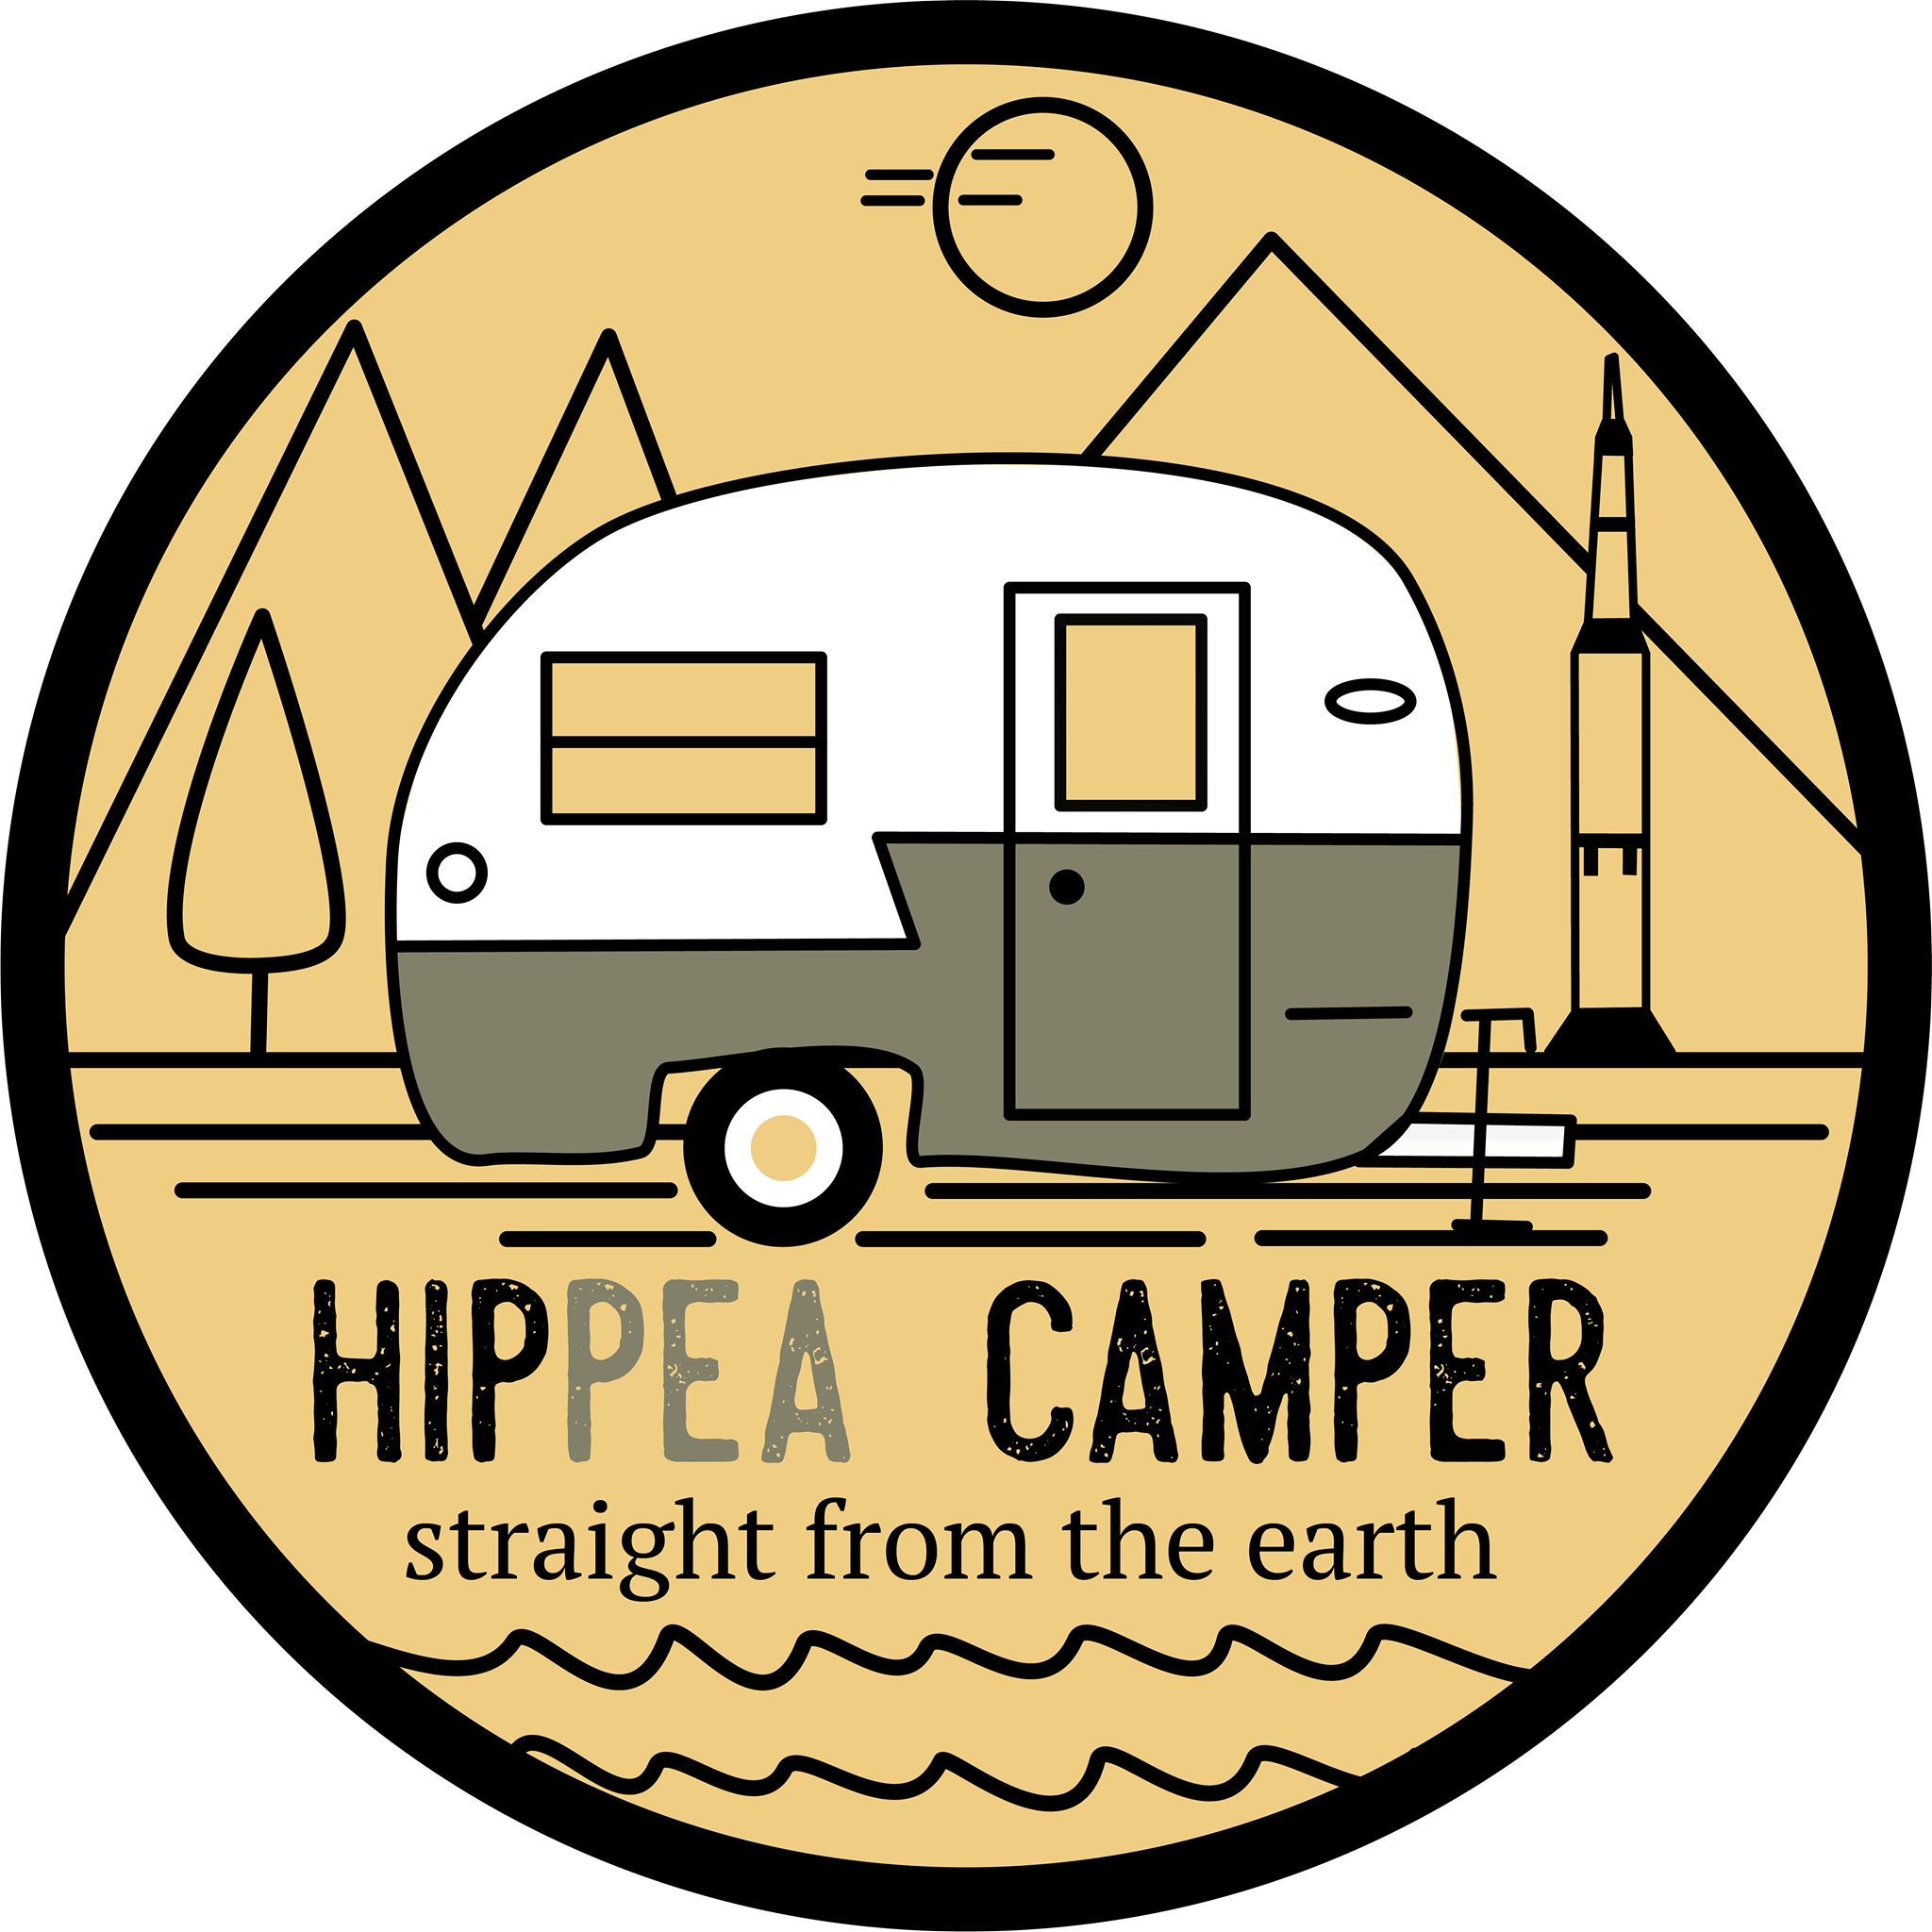 HipPea Camper